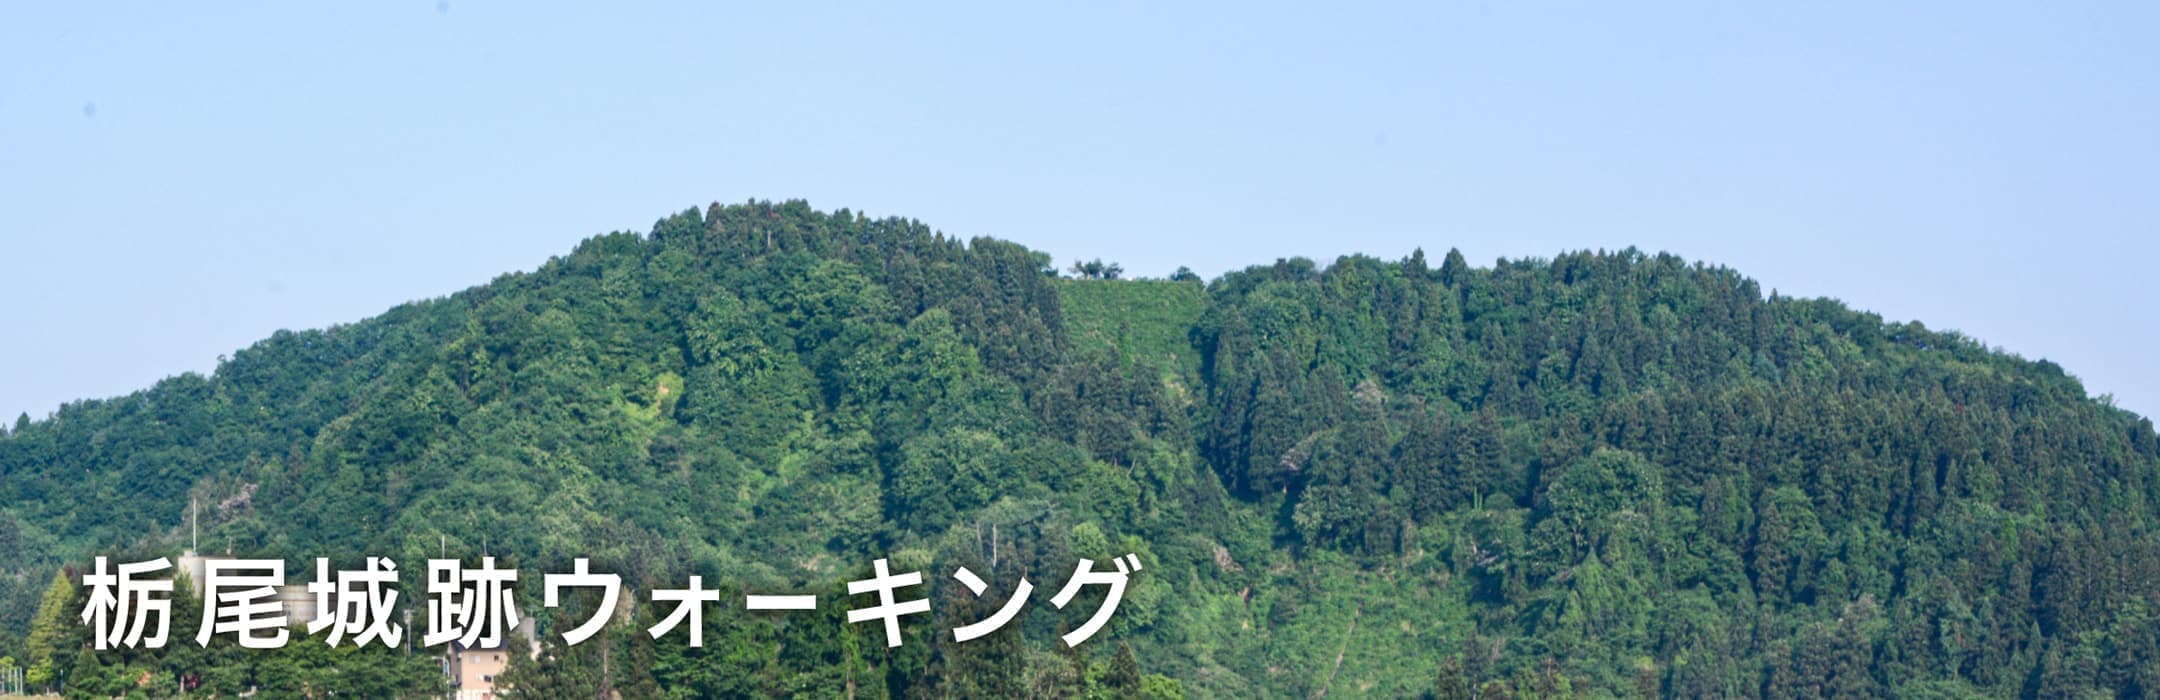 栃尾城跡ウォーキング